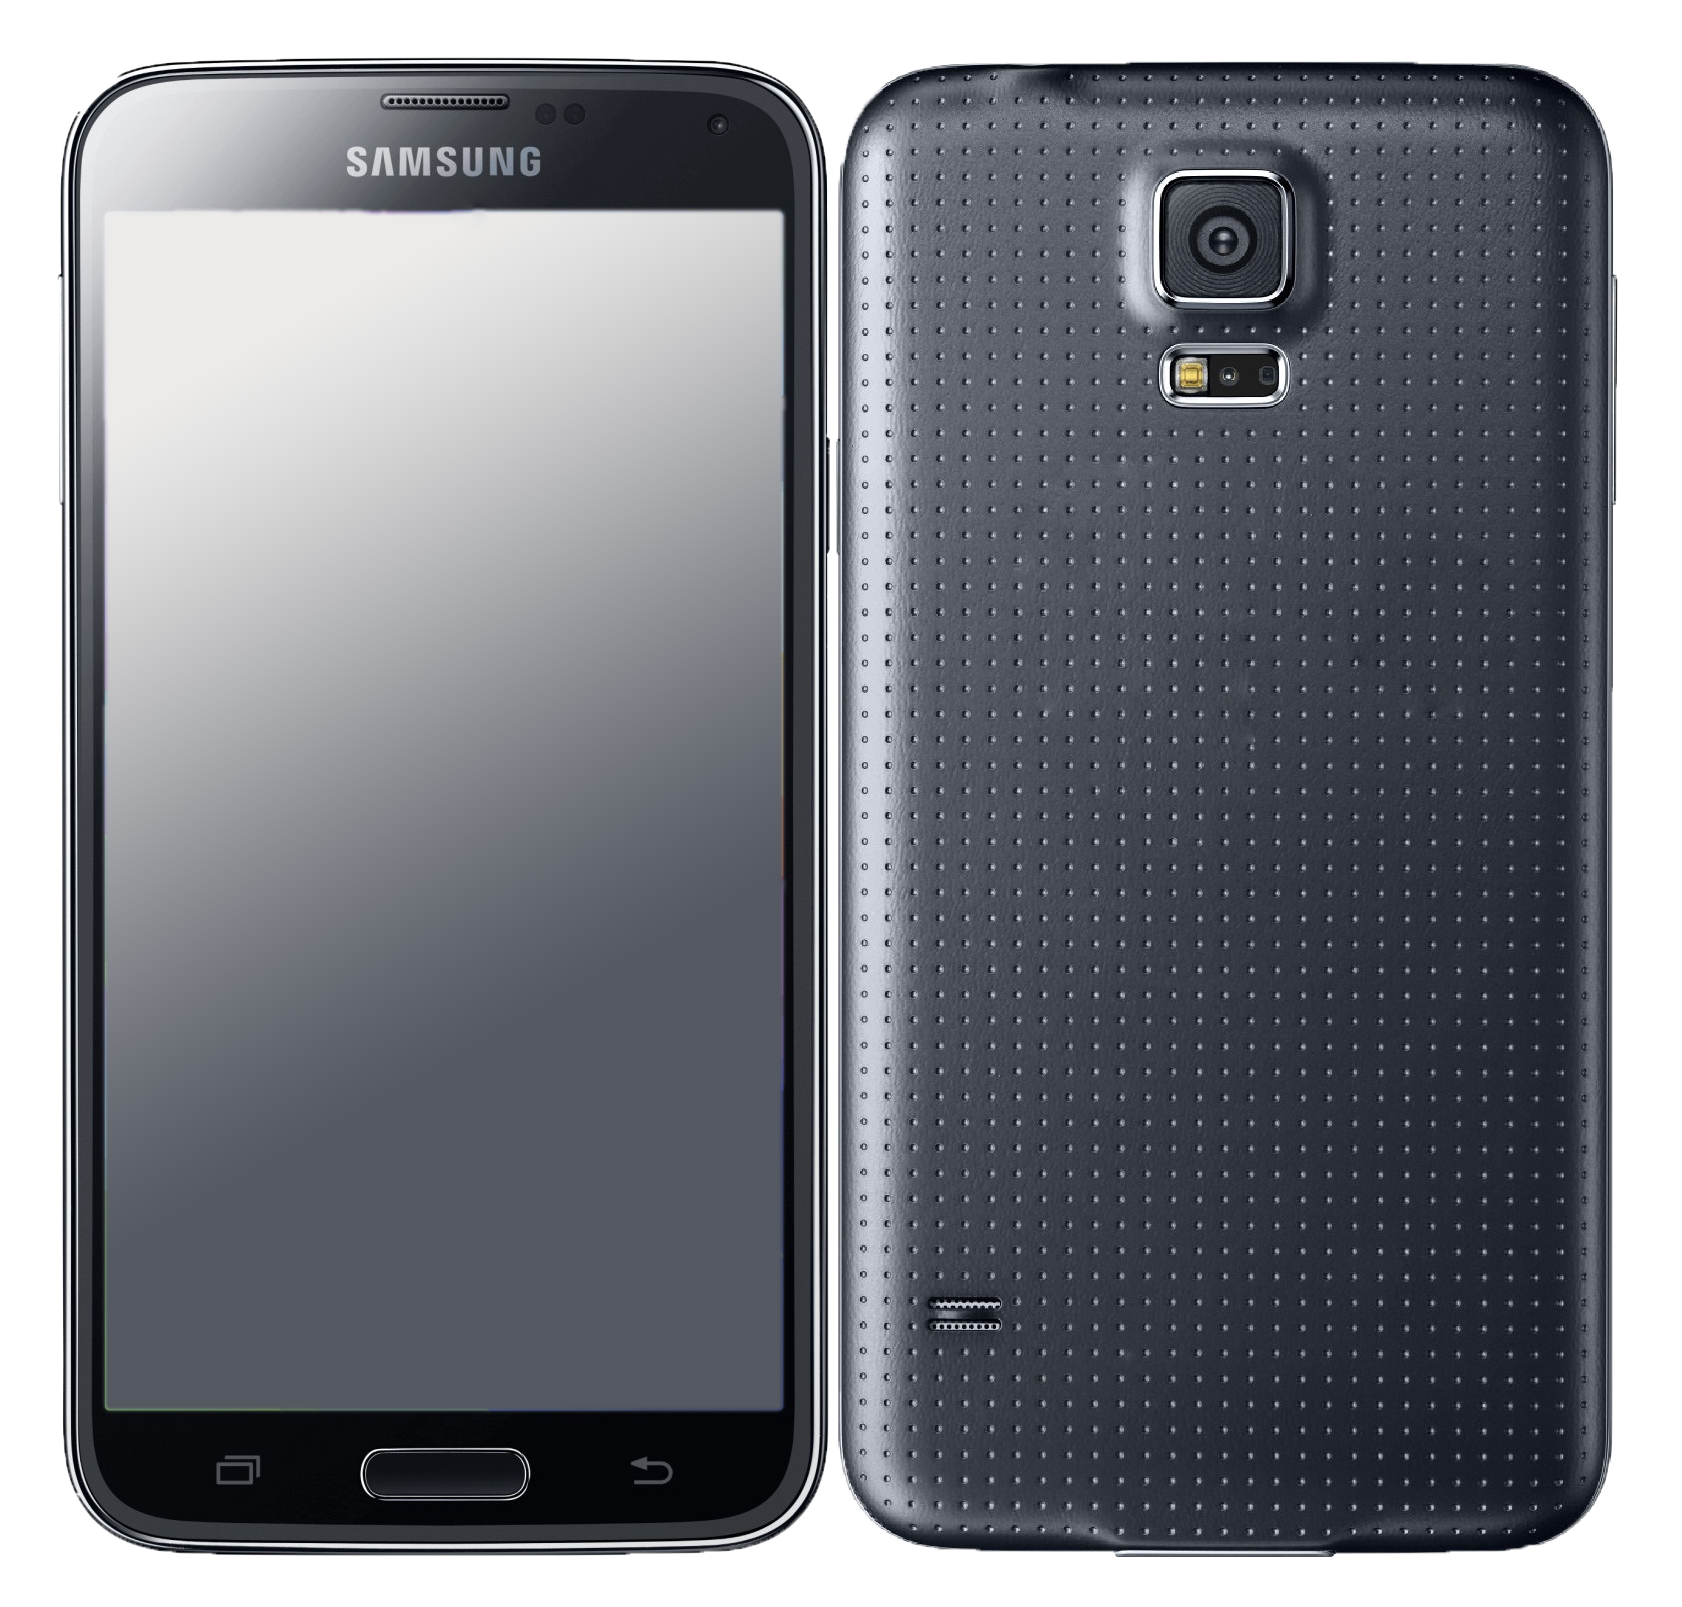 Samsung Galaxy s5 16 GB schwarz - Ohne Vertrag